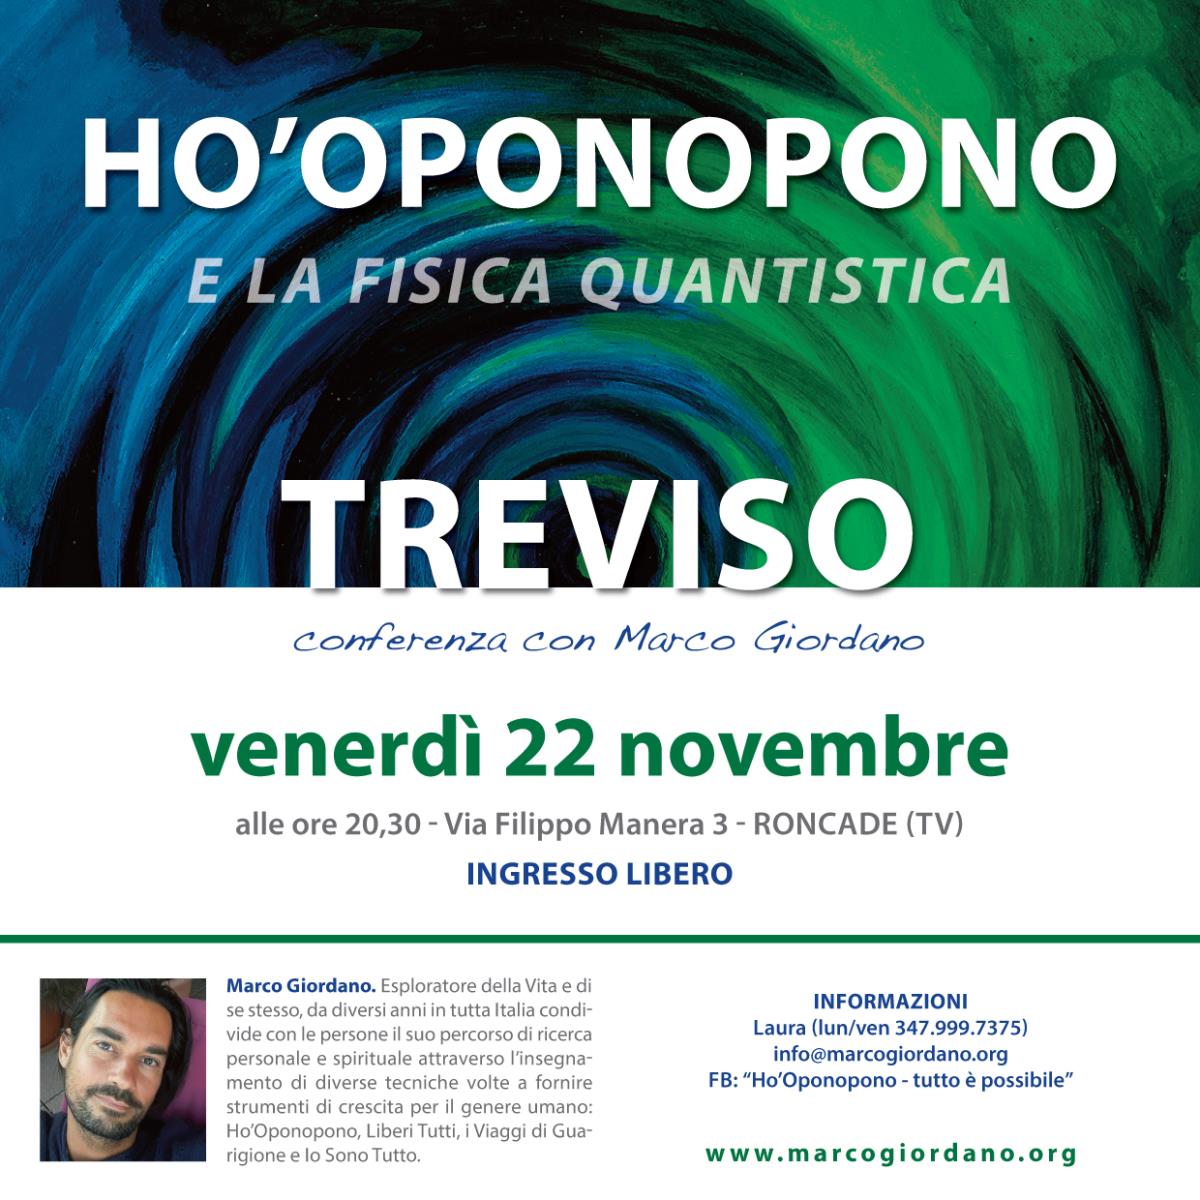 <b>HO'OPONOPONO e la Fisica Quantistica - conferenza</b> venerd 22 novembre <b>TREVISO